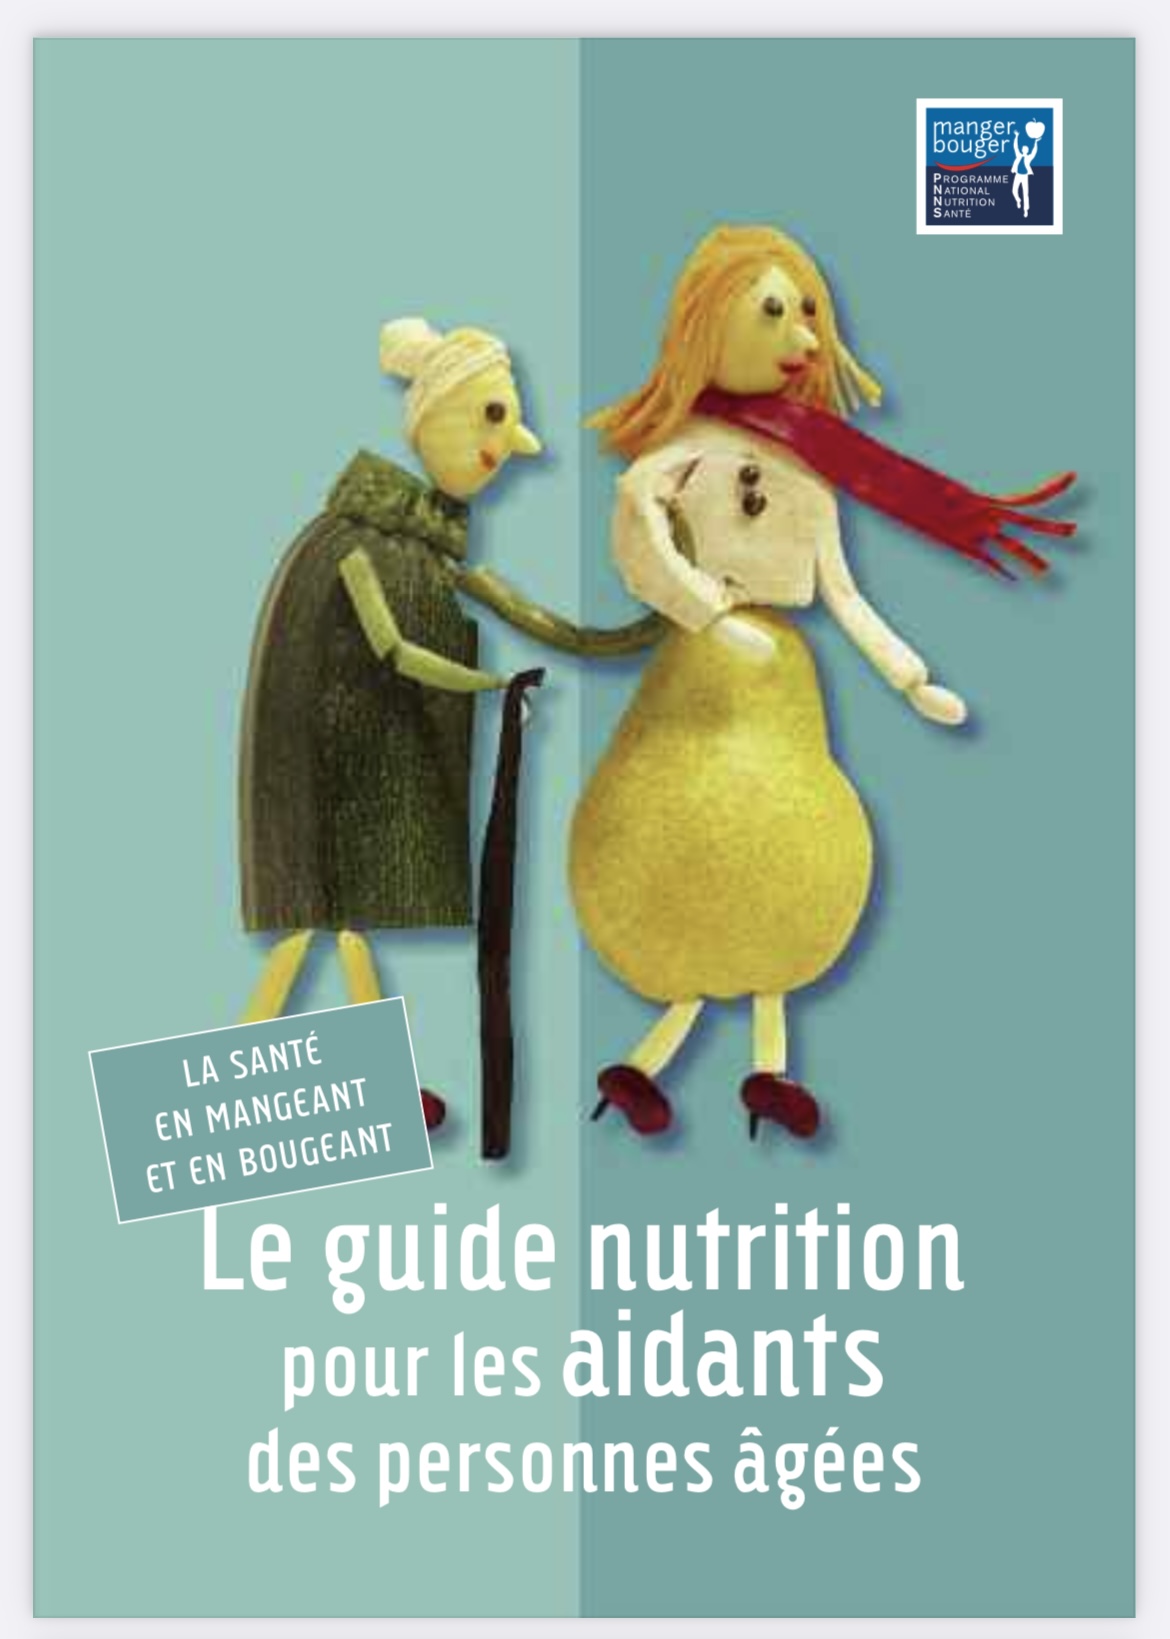 image : Le guide nutrition pour les aidants des personnes âgées